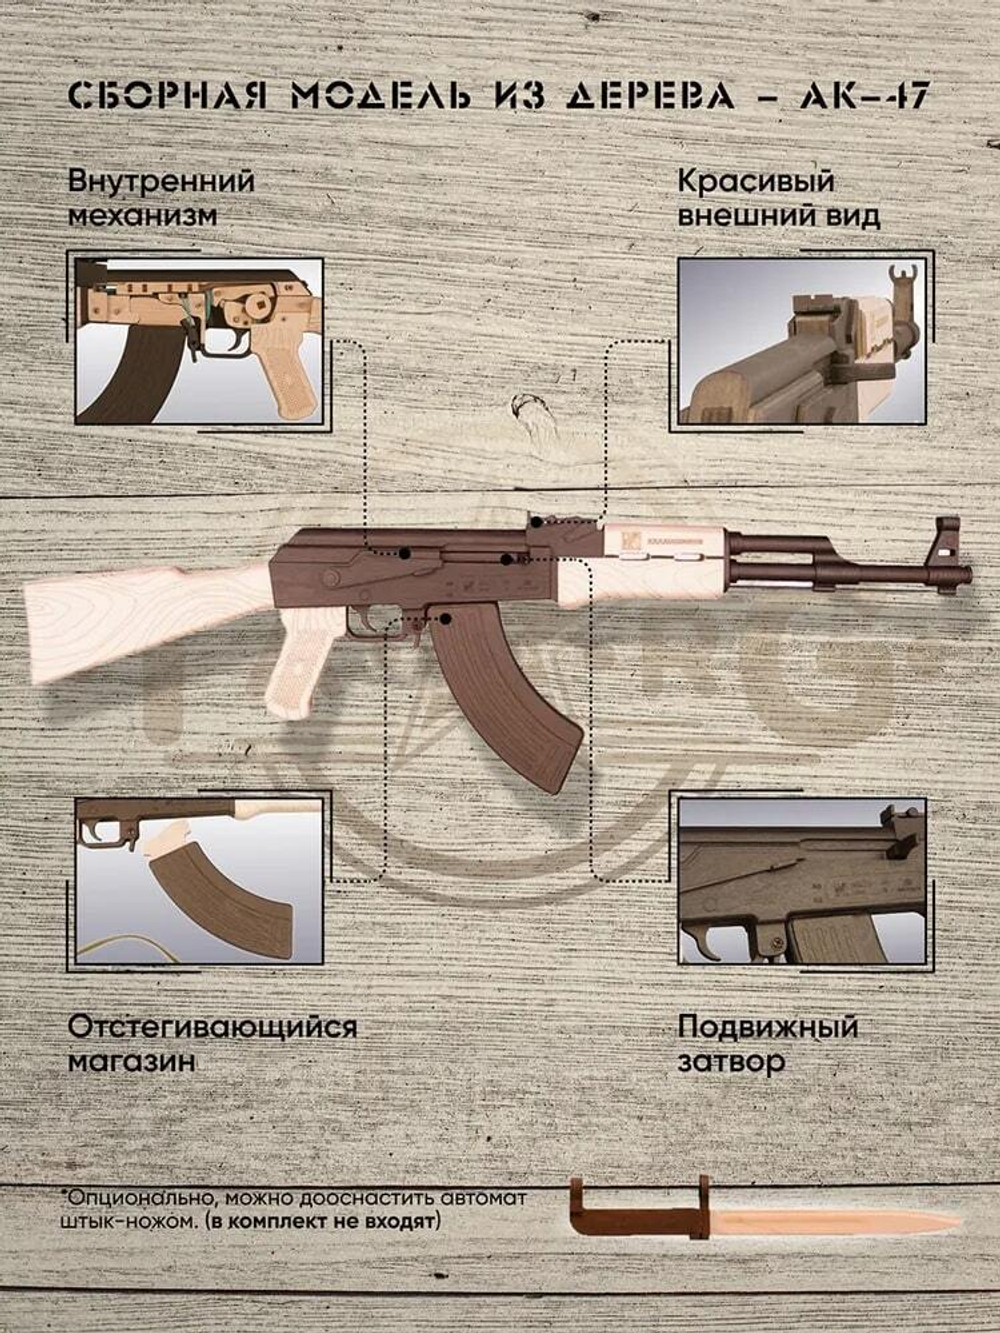 Миниатюрная модель АК-47